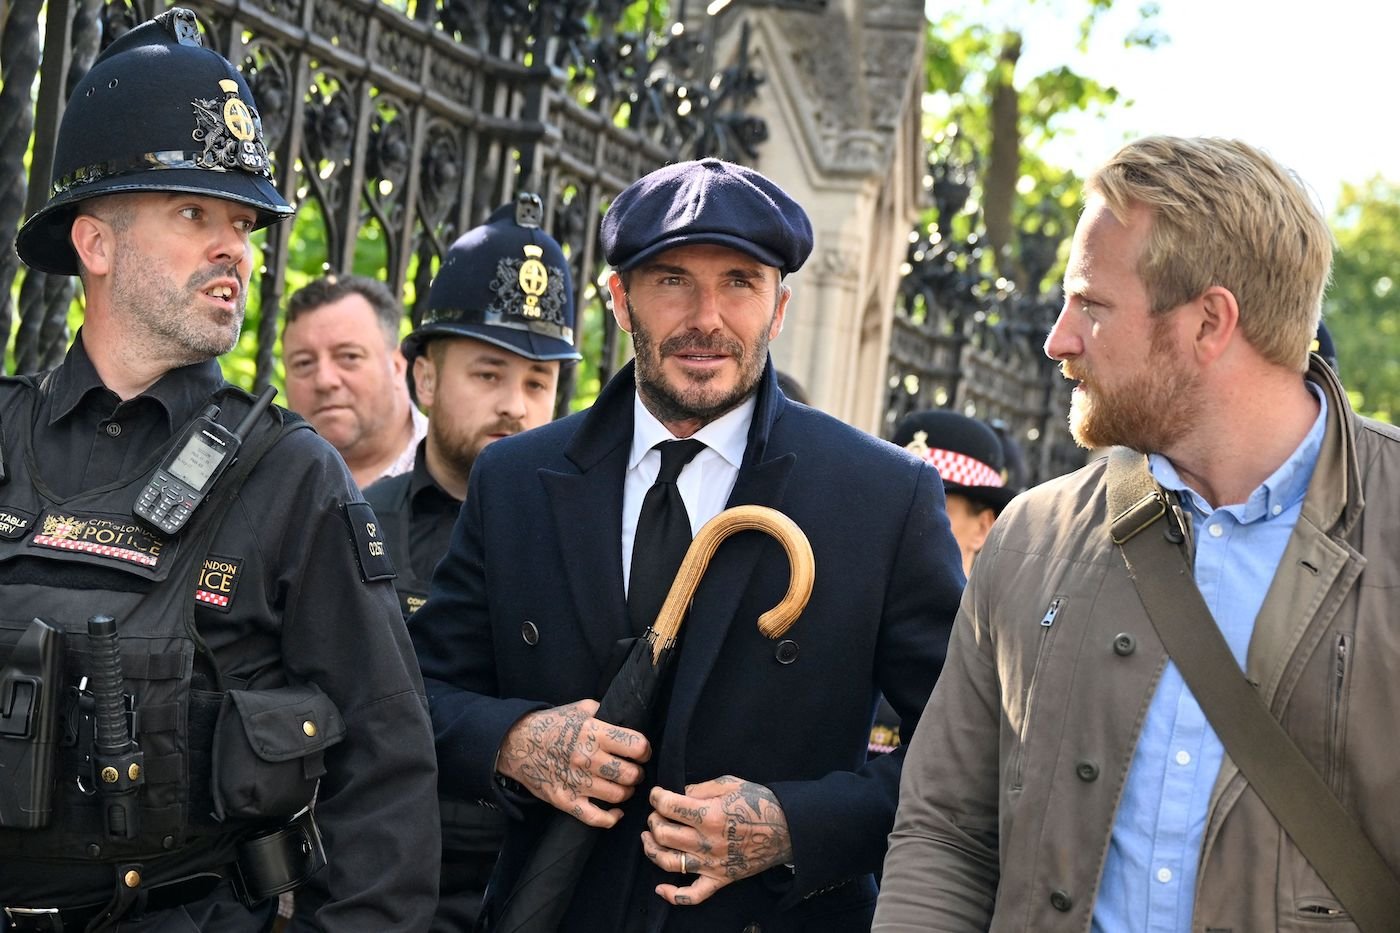 David Beckham poderia ter pulado a fila para ver o Queen – Victoria Beckham revela por que ele não o fez